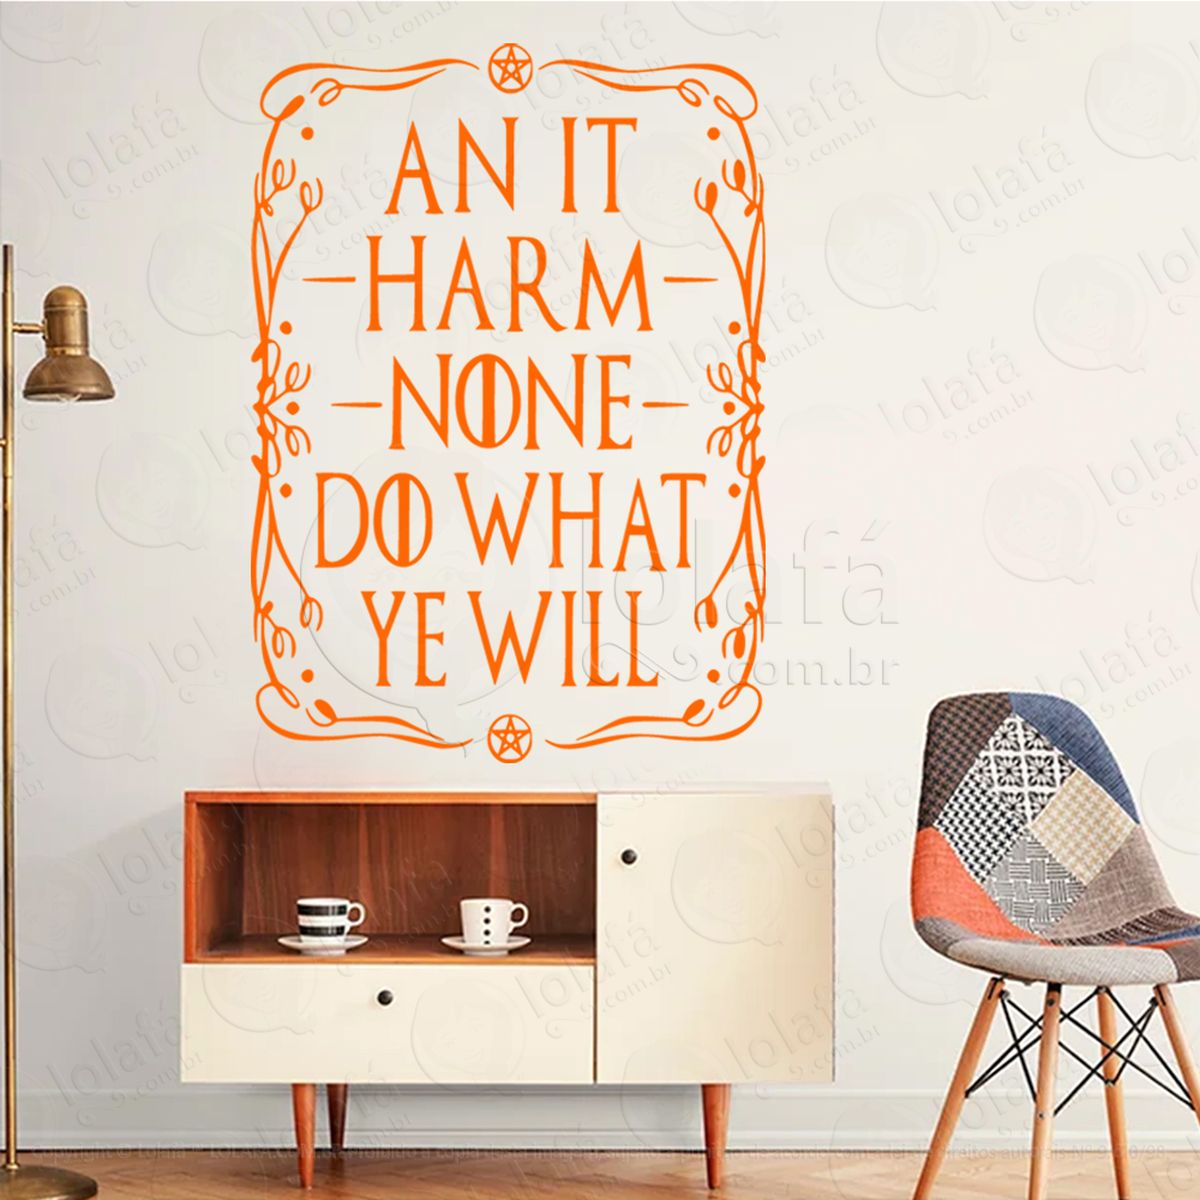 nenhum dano harm none adesivo de parede decorativo para casa, sala, quarto, vidro e altar ocultista - mod:25